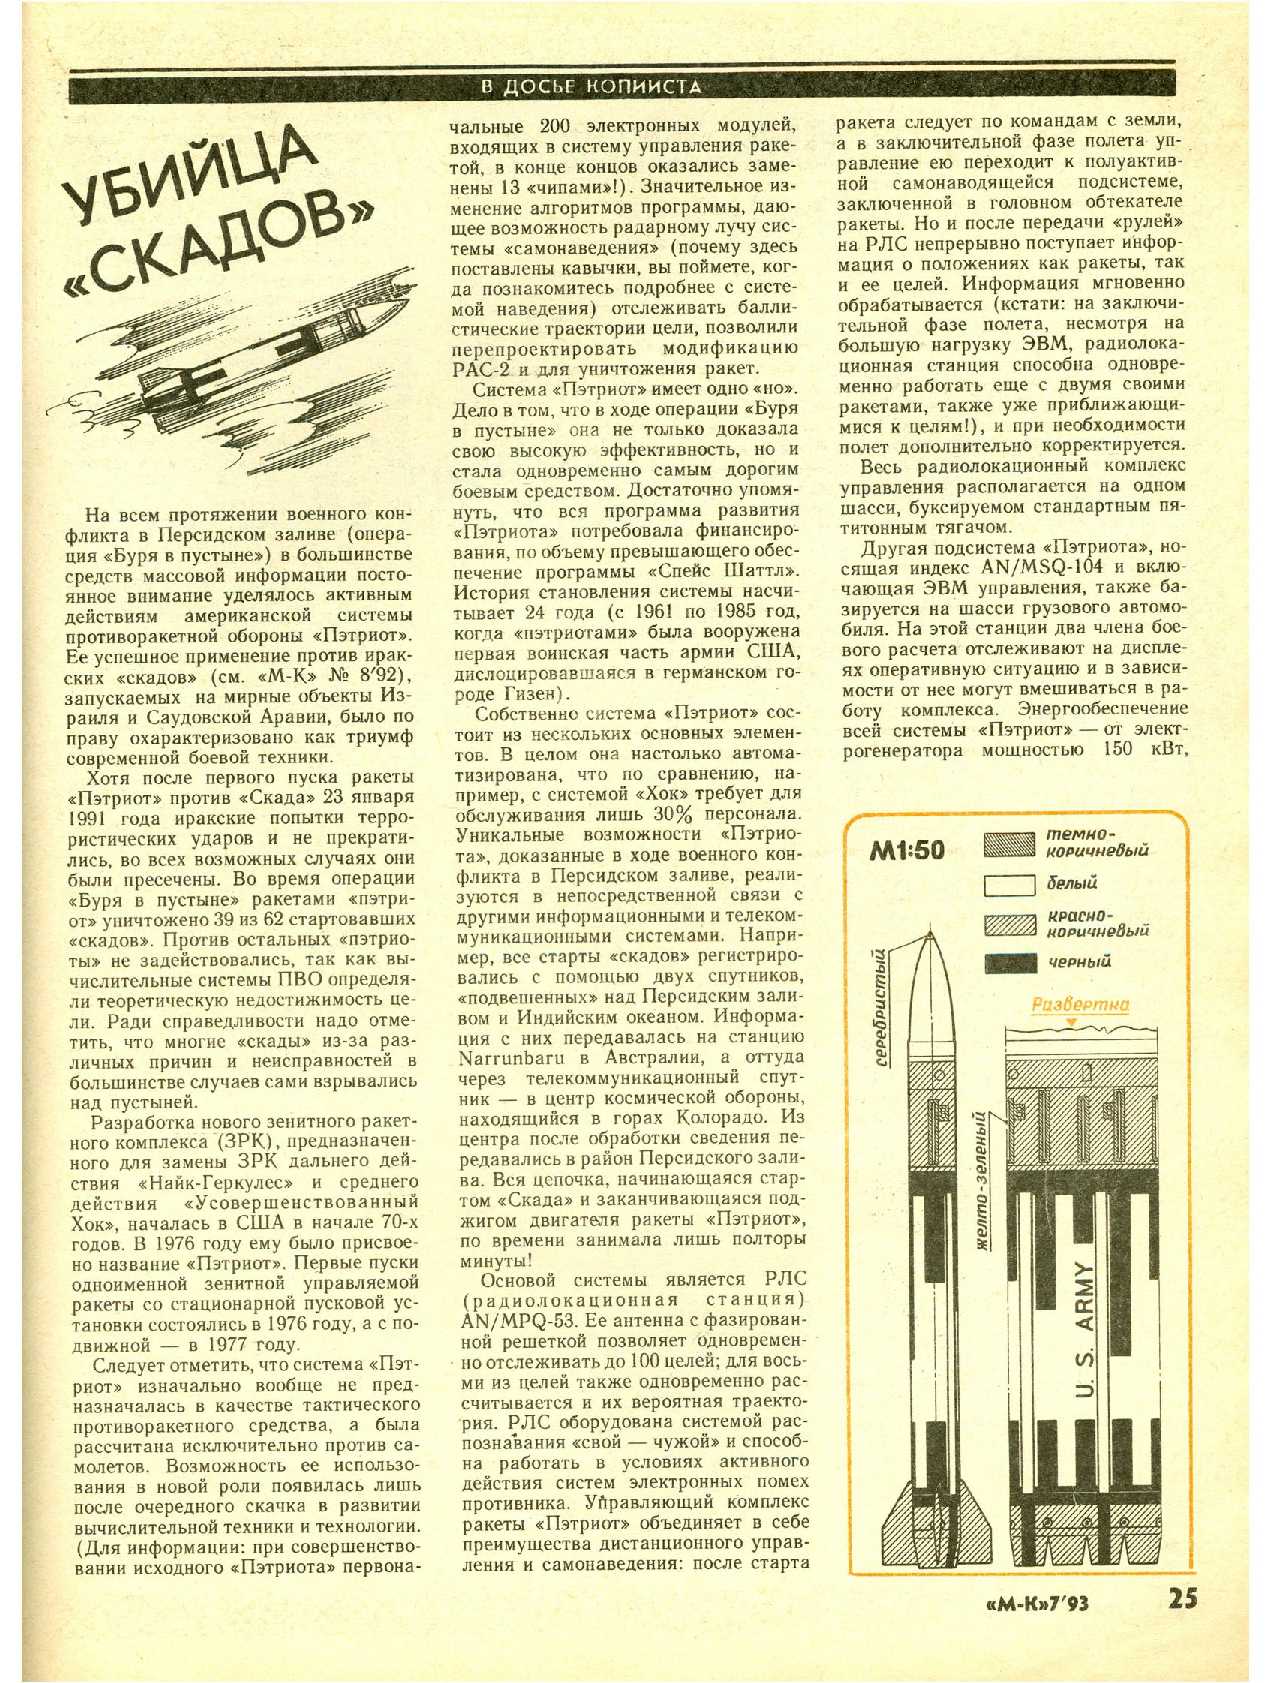 МК 7, 1993, 25 c.